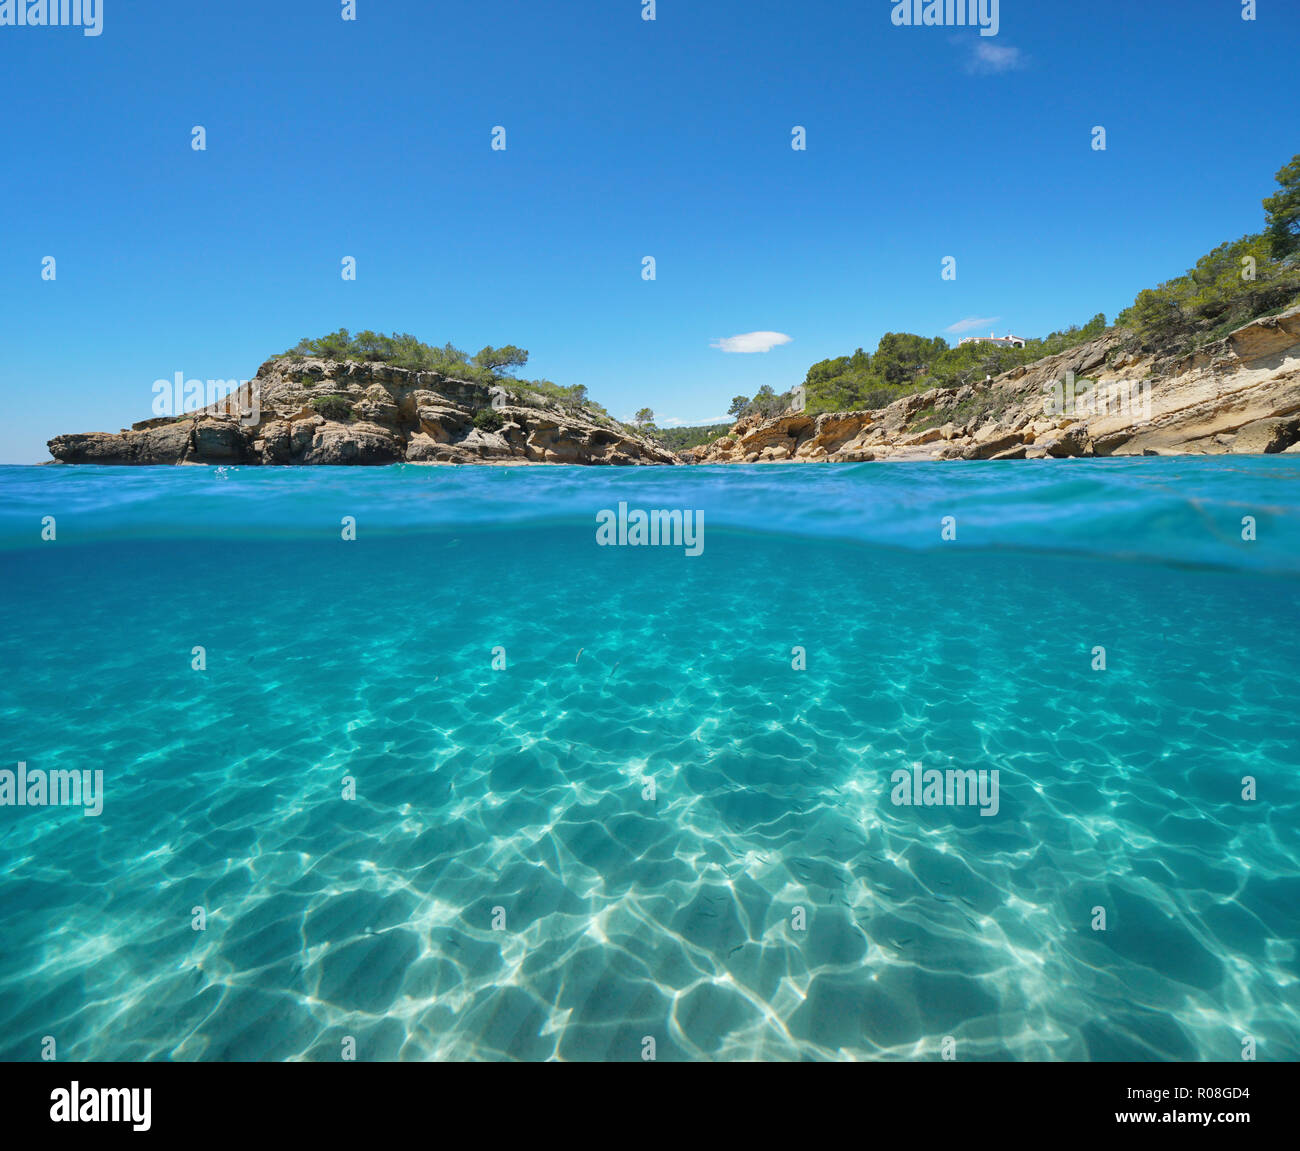 Costa rocciosa con un isolotto e sabbia subacquea, vista suddivisa per metà al di sopra e al di sotto della superficie dell'acqua, il mar Mediterraneo, l'Illot, L'Ametlla de Mar, Spagna Foto Stock